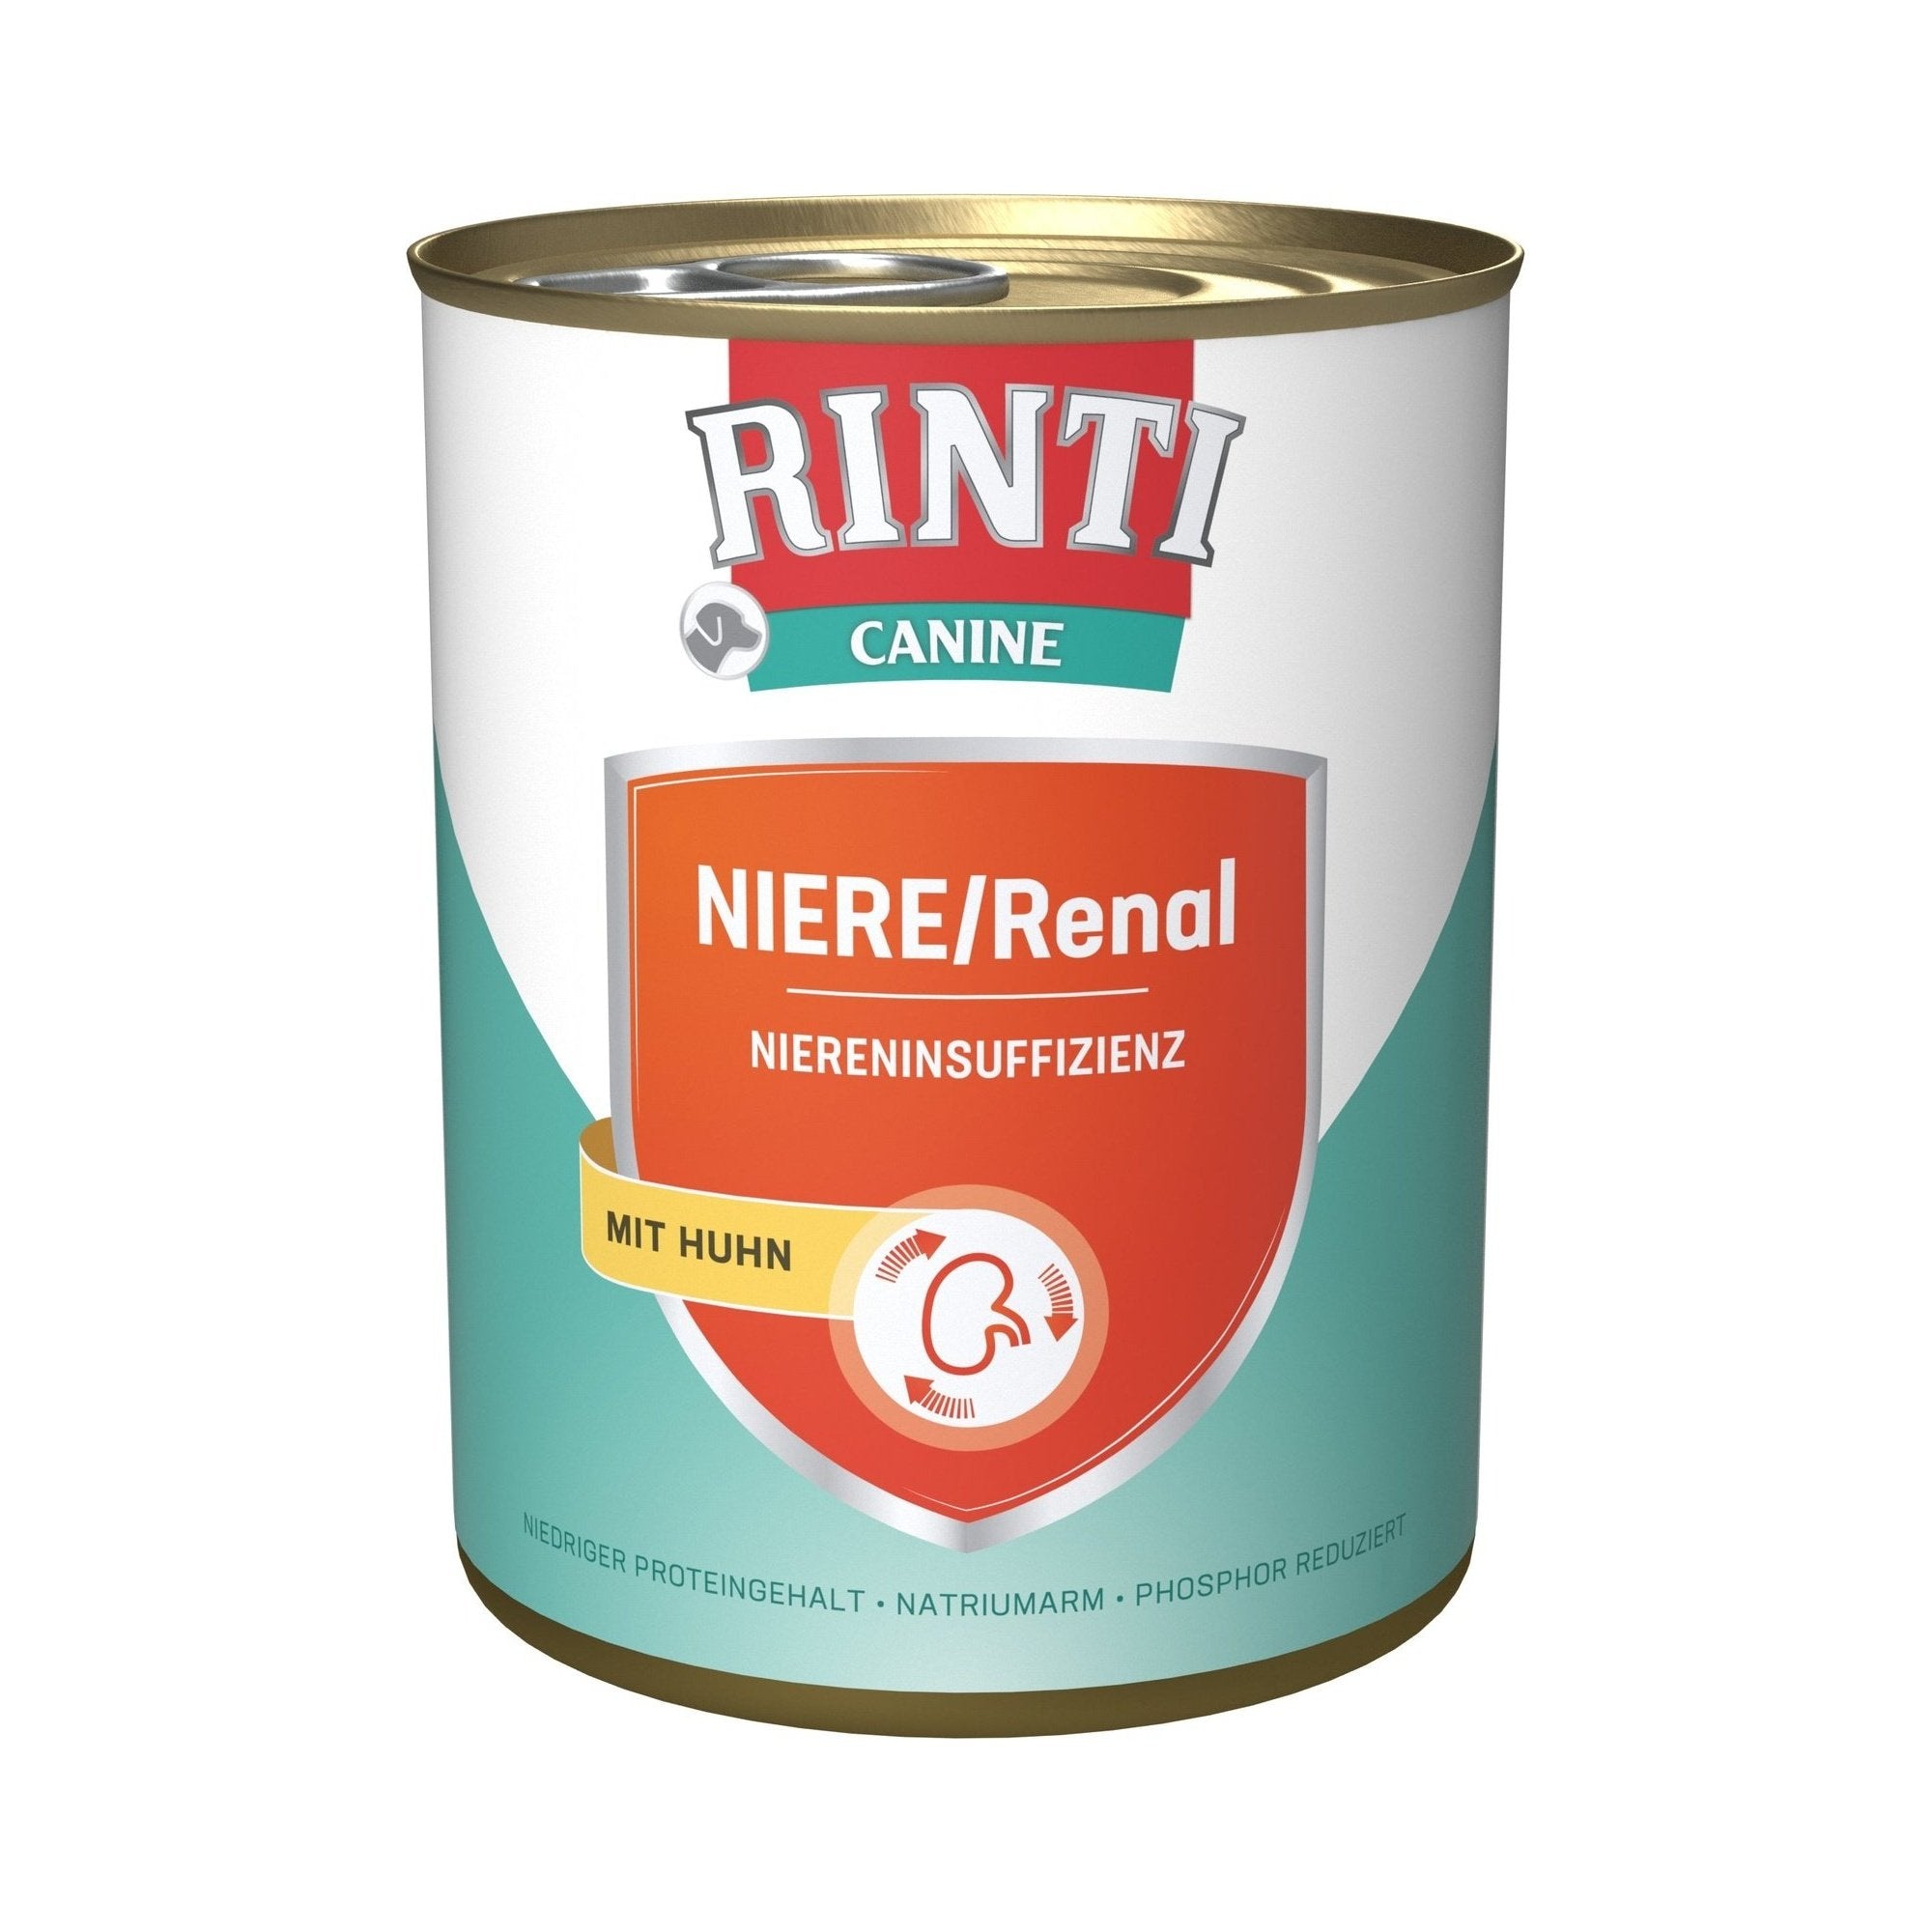 Artikel mit dem Namen Rinti Canine Niere/Renal Huhn im Shop von zoo.de , dem Onlineshop für nachhaltiges Hundefutter und Katzenfutter.